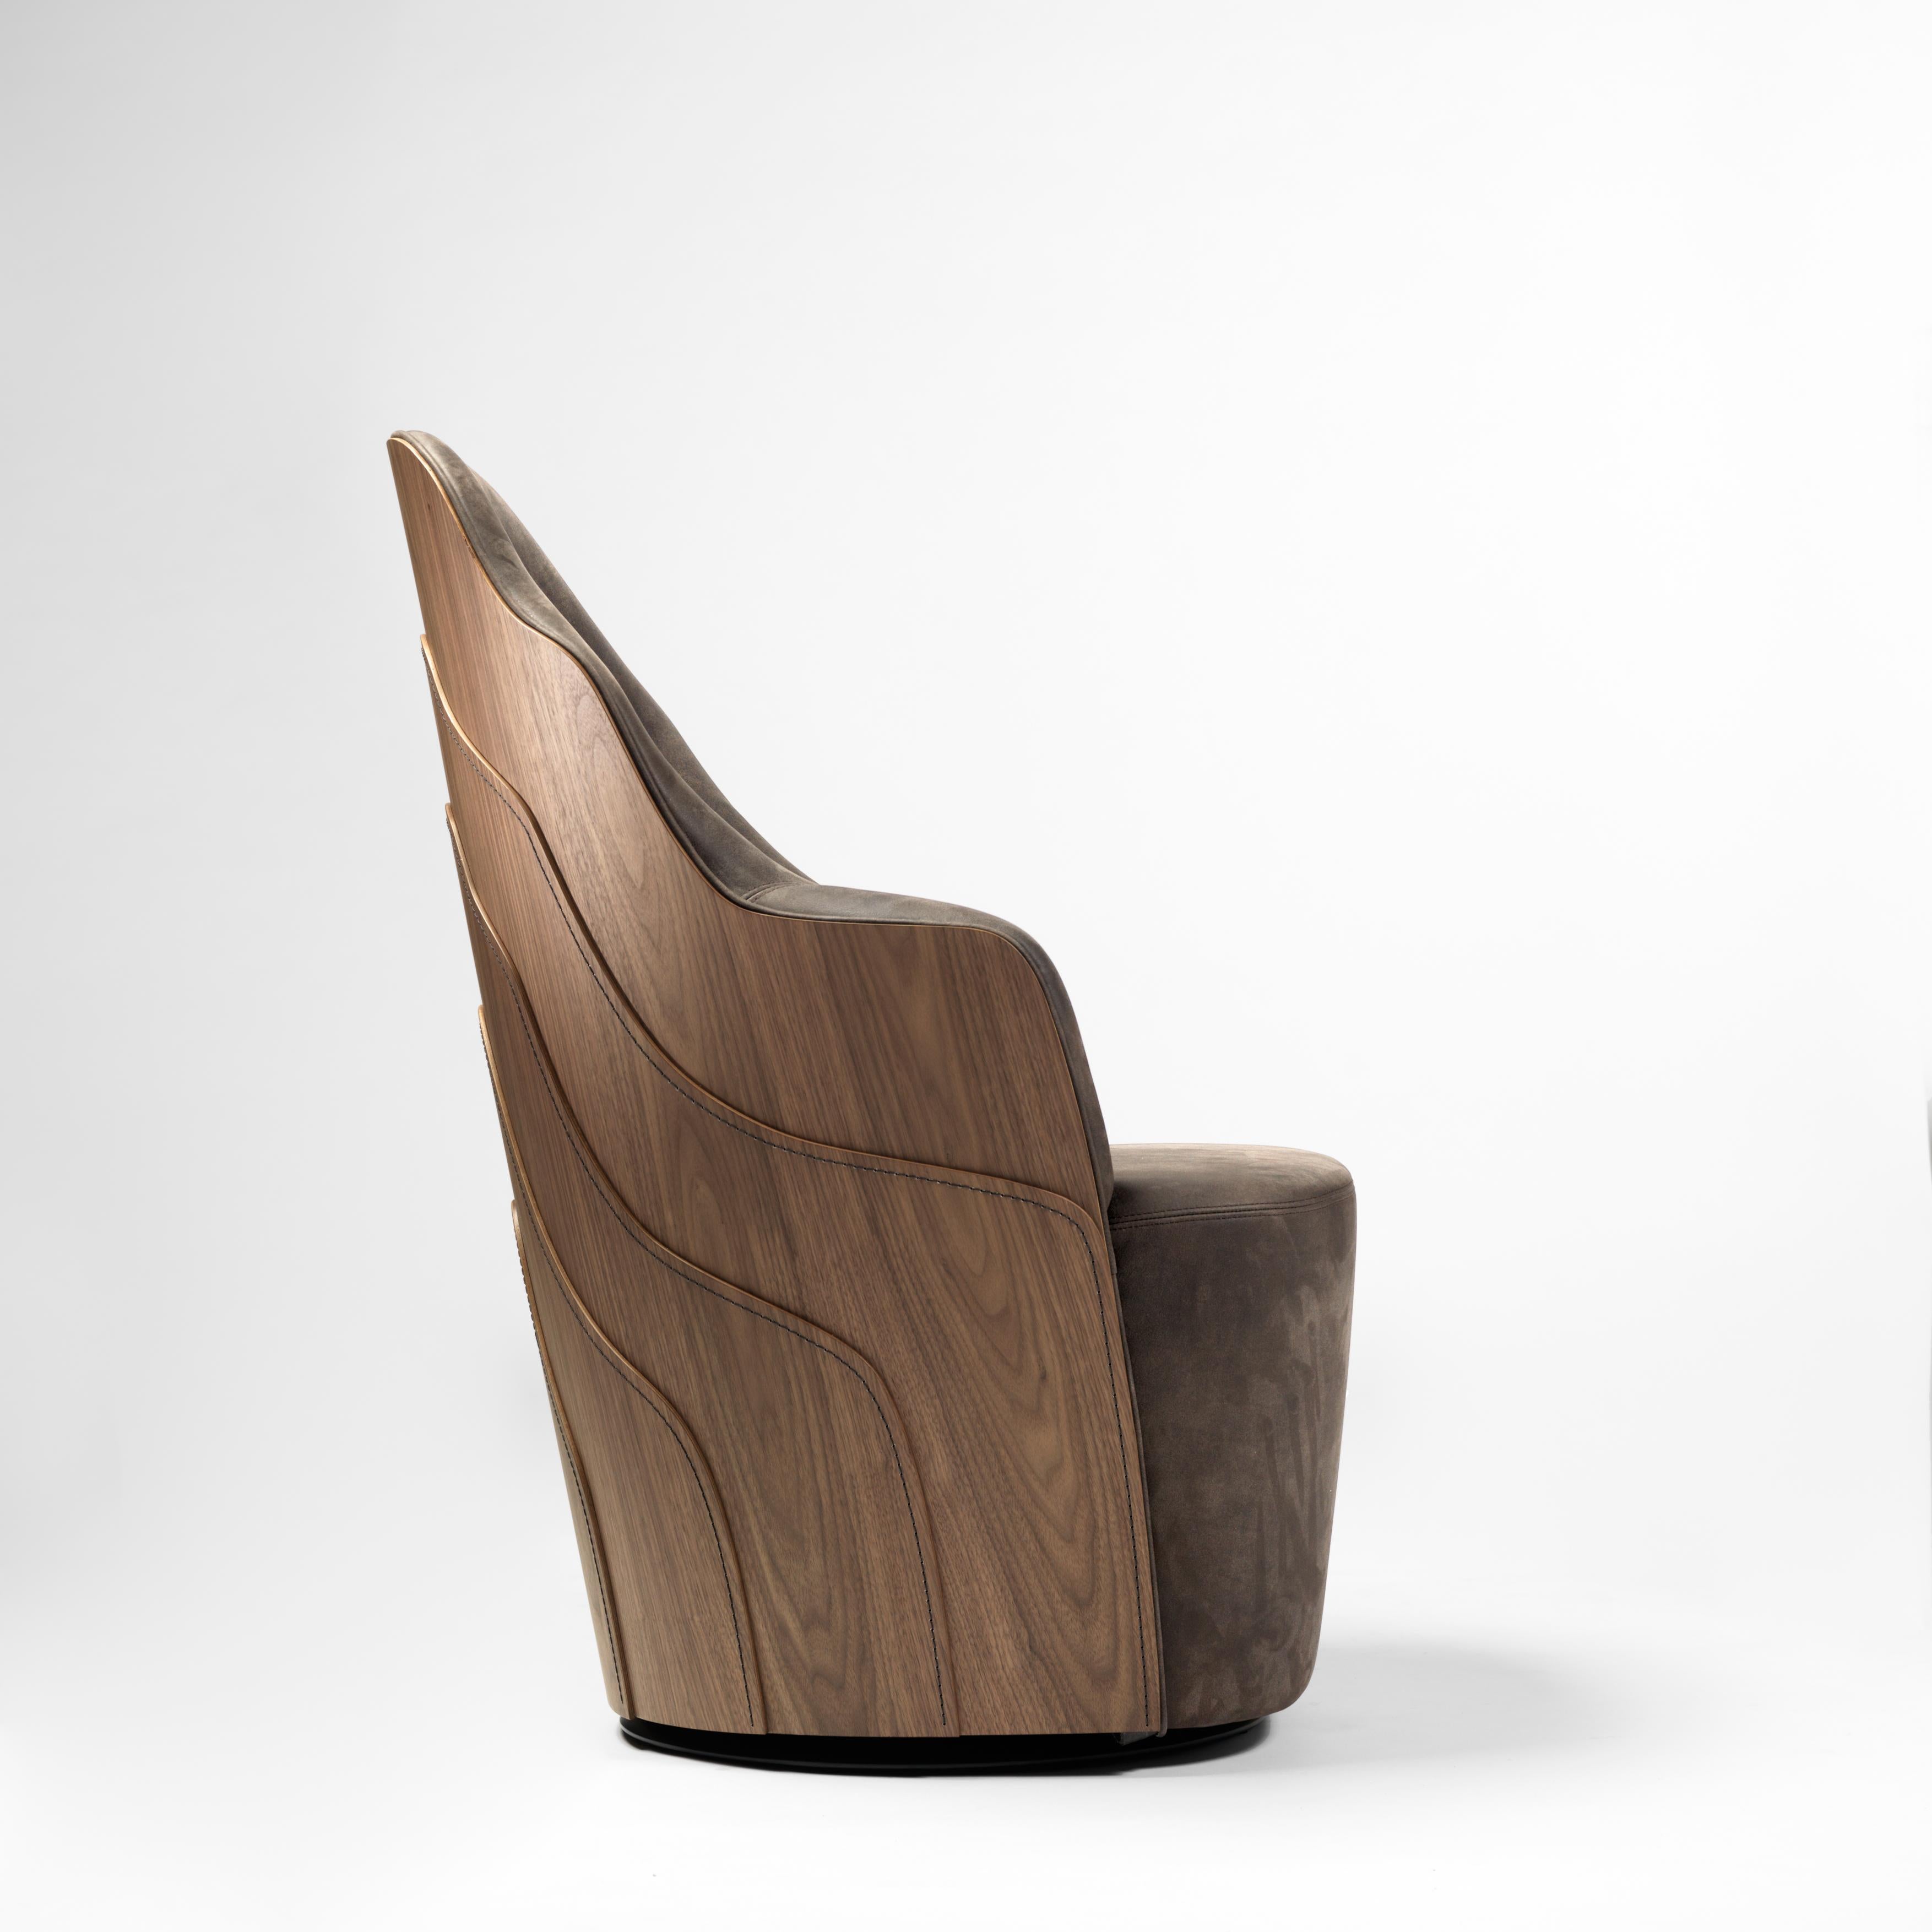 Sessel, entworfen von Färg & Blanche, hergestellt von BD Barcelona.

Massive Holzstruktur und gepolsterter Sitz mit der Möglichkeit, ein Drehsystem in das Gestell zu integrieren. Rückenlehne aus Birkensperrholz, mit Polyamidfaden genäht. 

